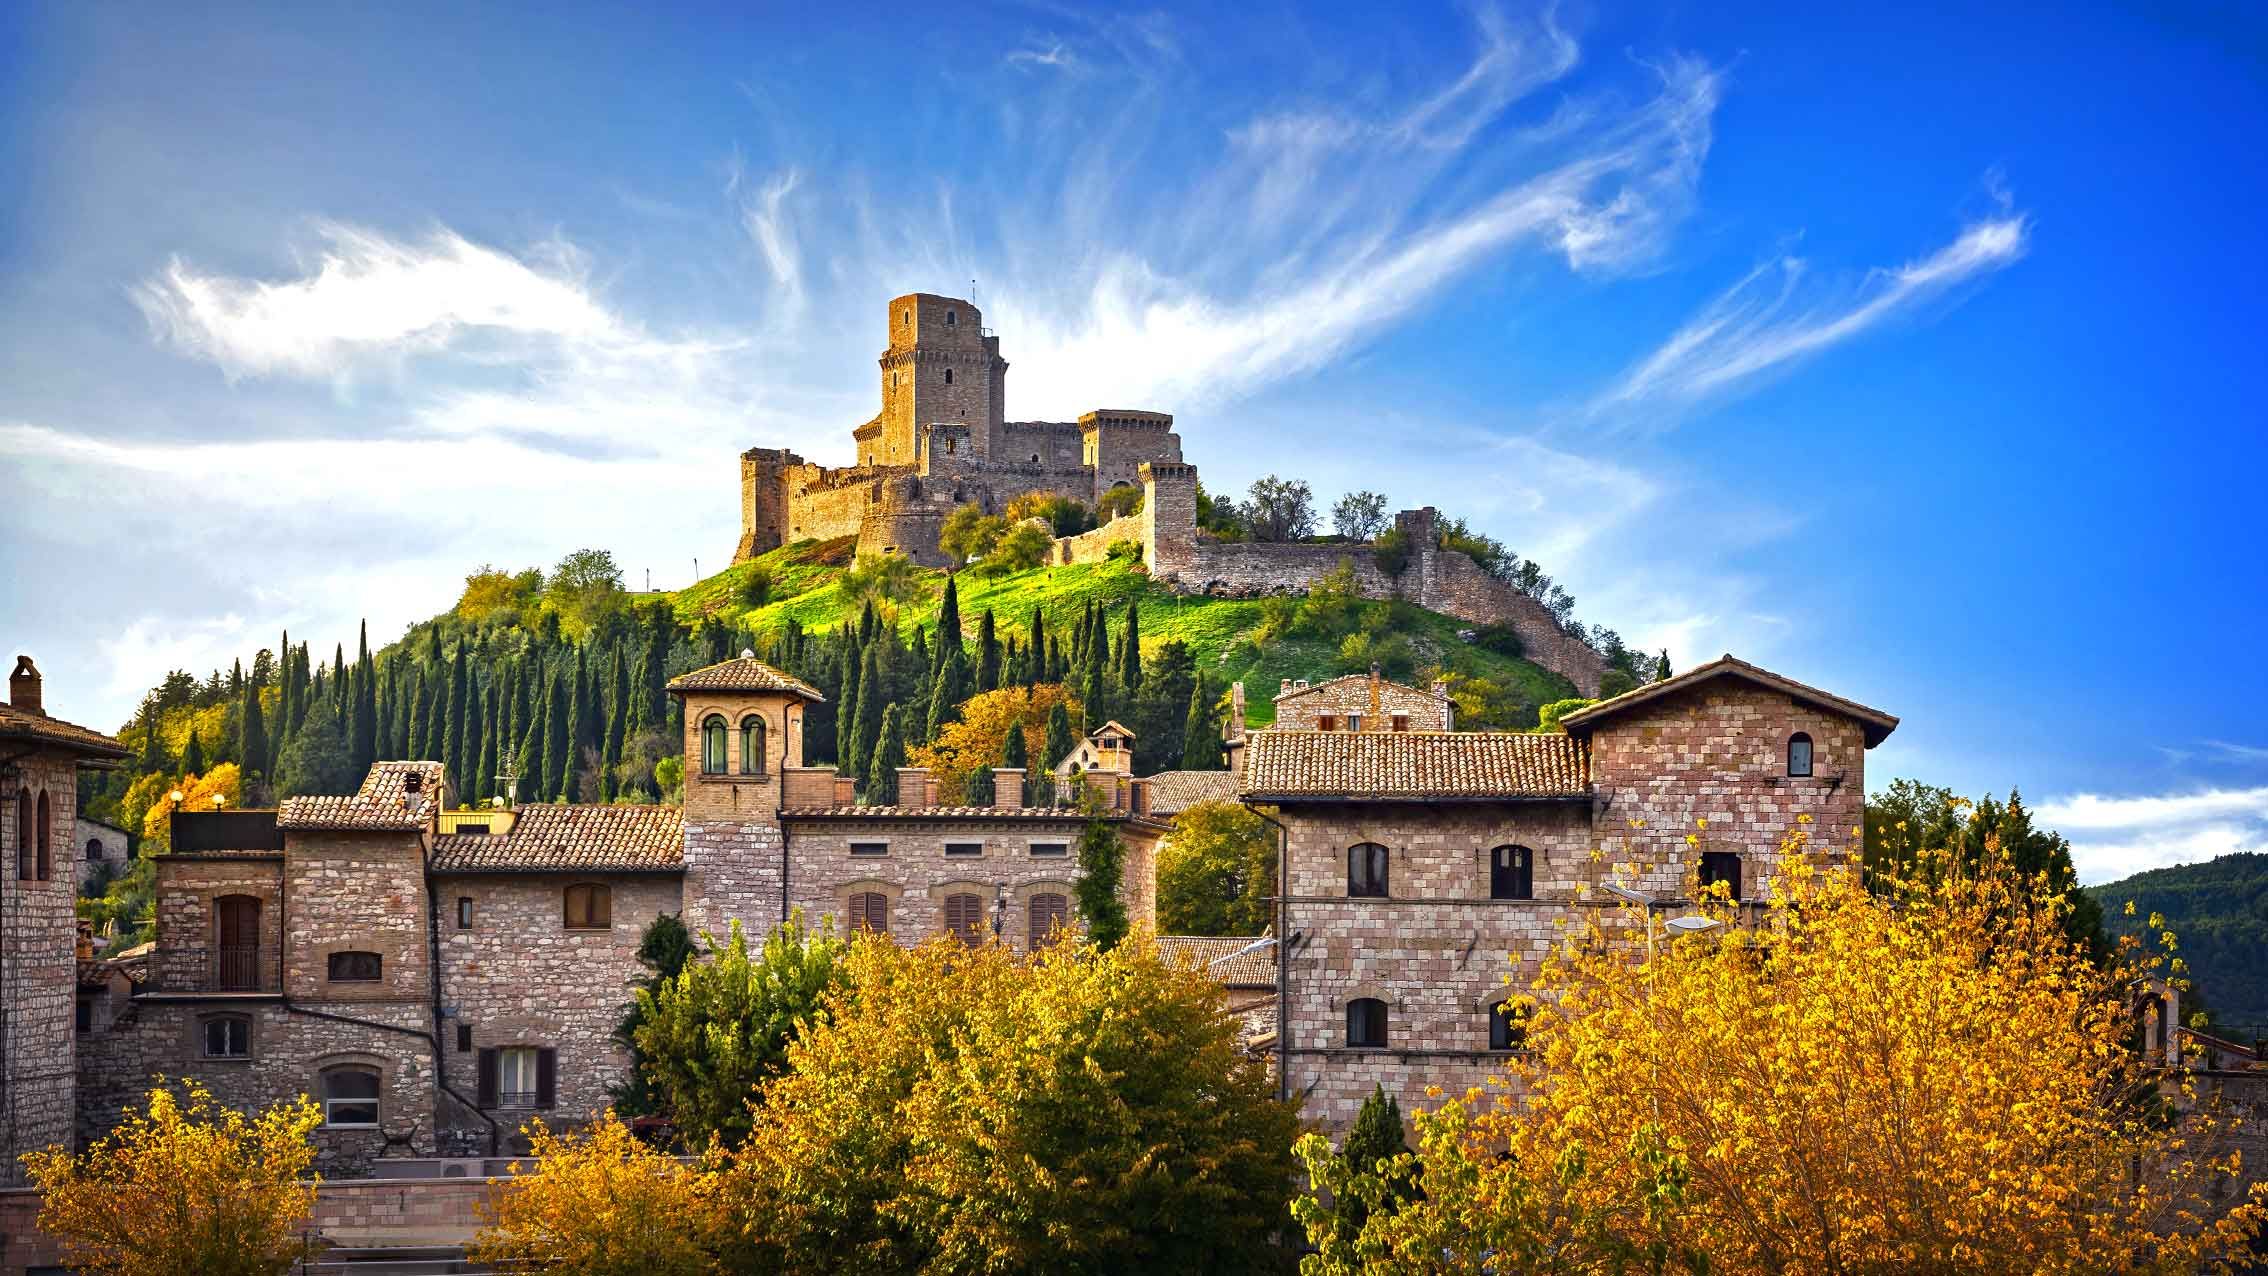 Rocca maggiore fortress